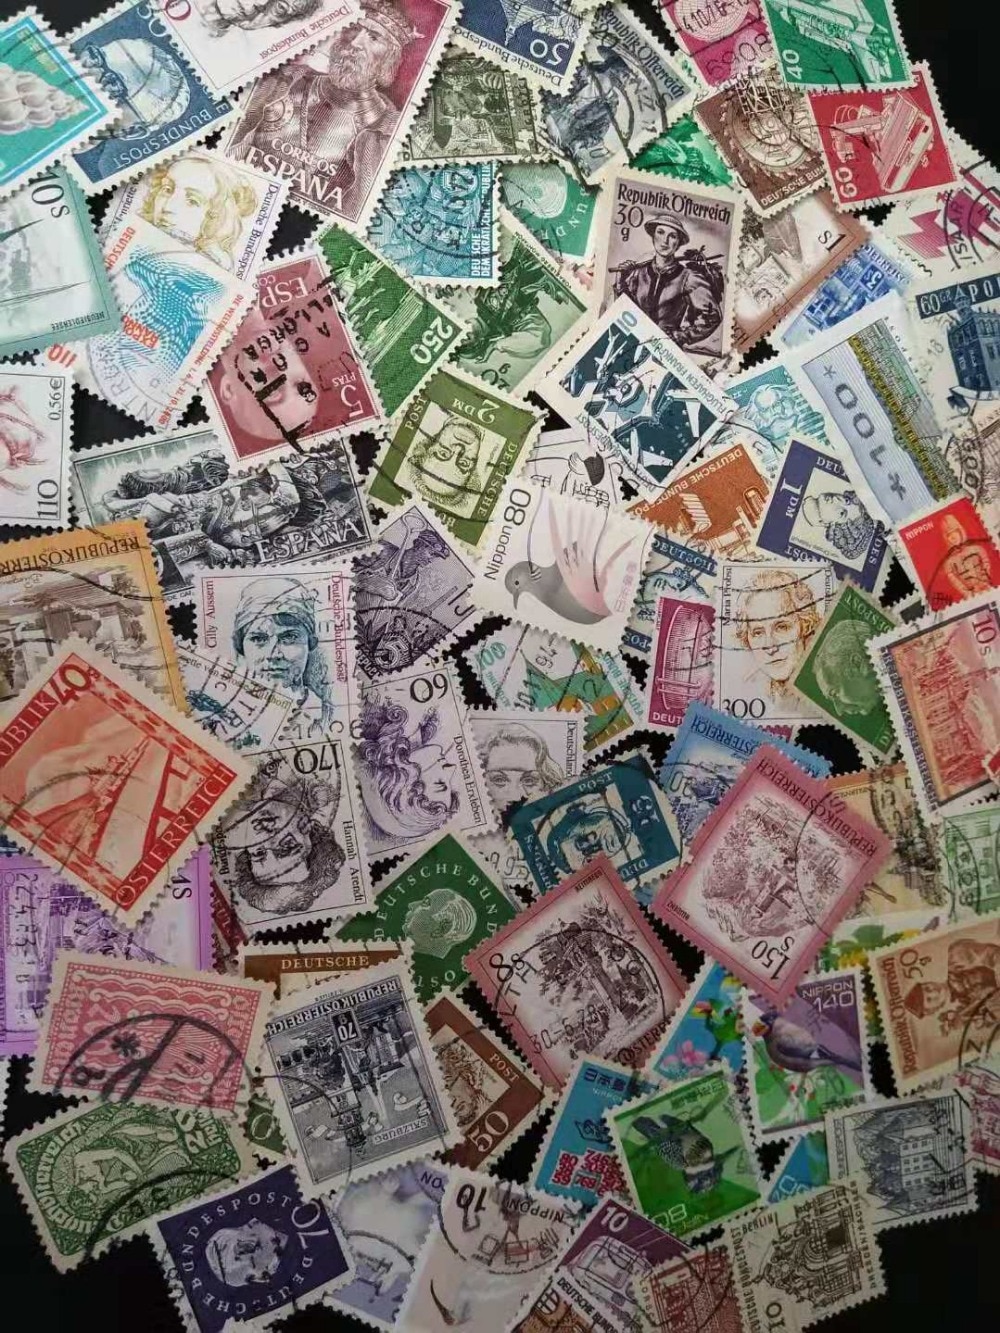 100 Stck Paket Verschiedene Verwendet Definitives Regelmäßige Post Briefmarken (unwiederholt) sammlung porto Sammlerstücke Gedenk